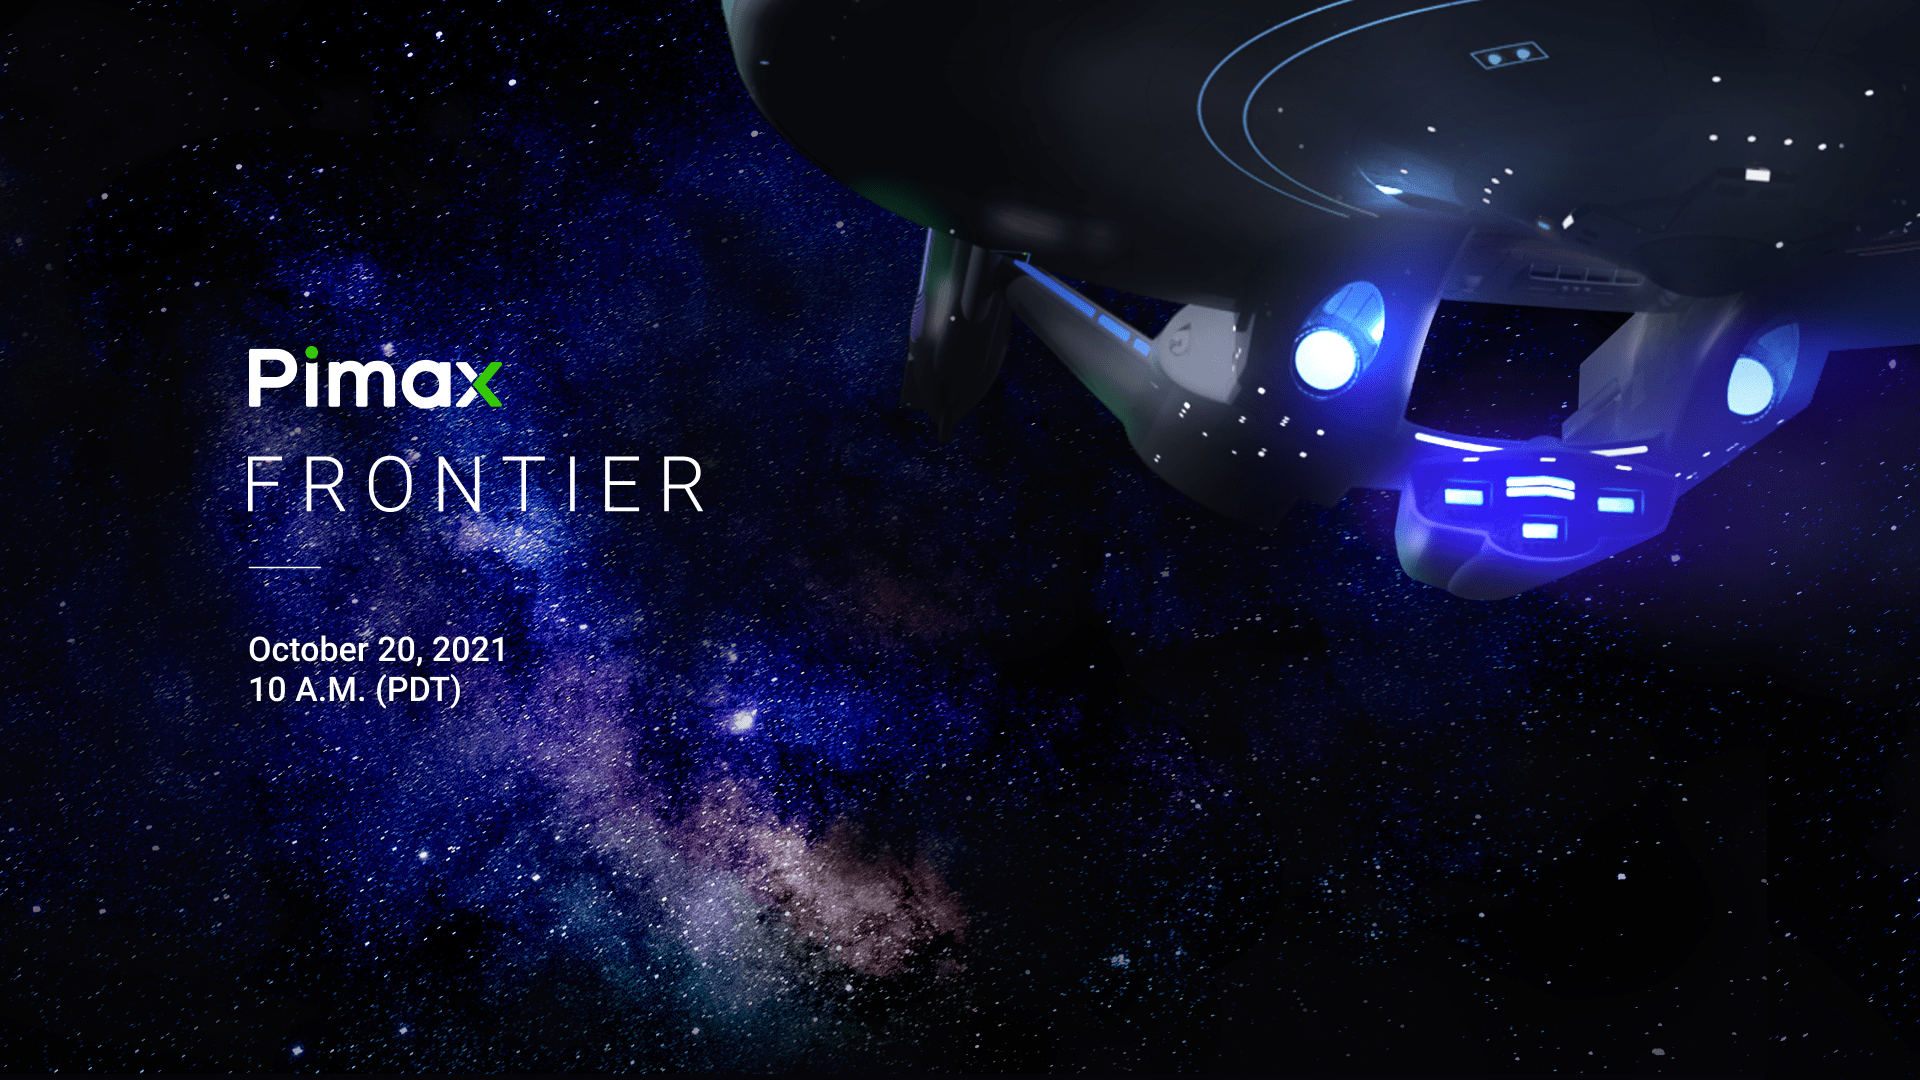 小派科技将于10月20日举办全球线上大会“Pimax Frontier”